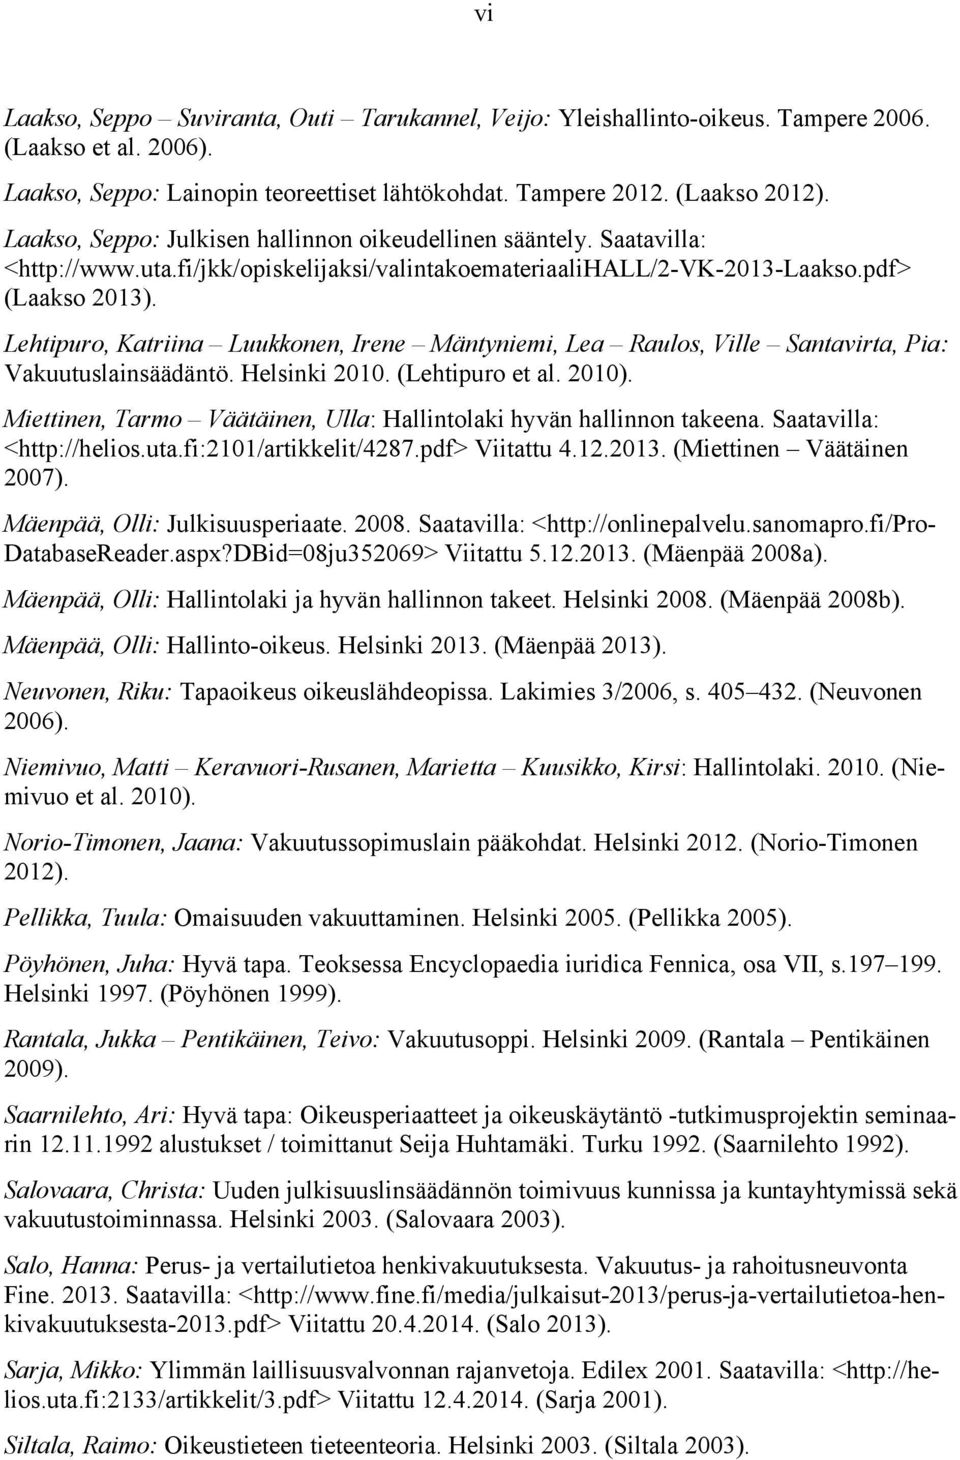 Lehtipuro, Katriina Luukkonen, Irene Mäntyniemi, Lea Raulos, Ville Santavirta, Pia: Vakuutuslainsäädäntö. Helsinki 2010. (Lehtipuro et al. 2010).